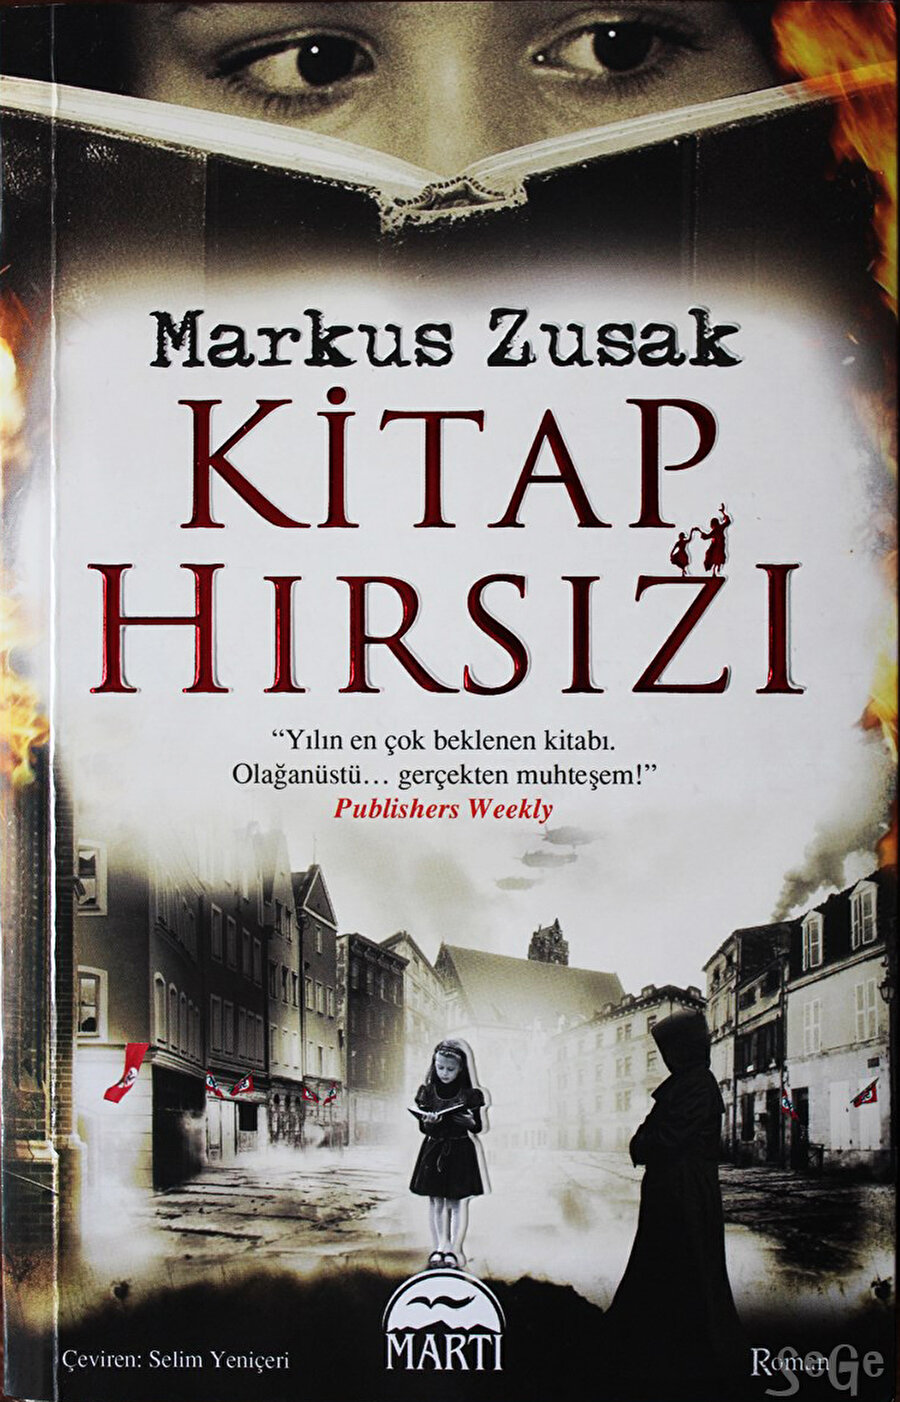 Kitap Hırsızı
Avustralyalı yazar Markus Zusak'ın en bilinen eseridir. Romanda, Nazi Almanya'sında küçük bir kızın yaşadıkları anlatılmıştır. 2005 yılında yayınlanan eser, 230 hafta boyunca New York Times En Çok Satanlar listesinde yer almıştır.